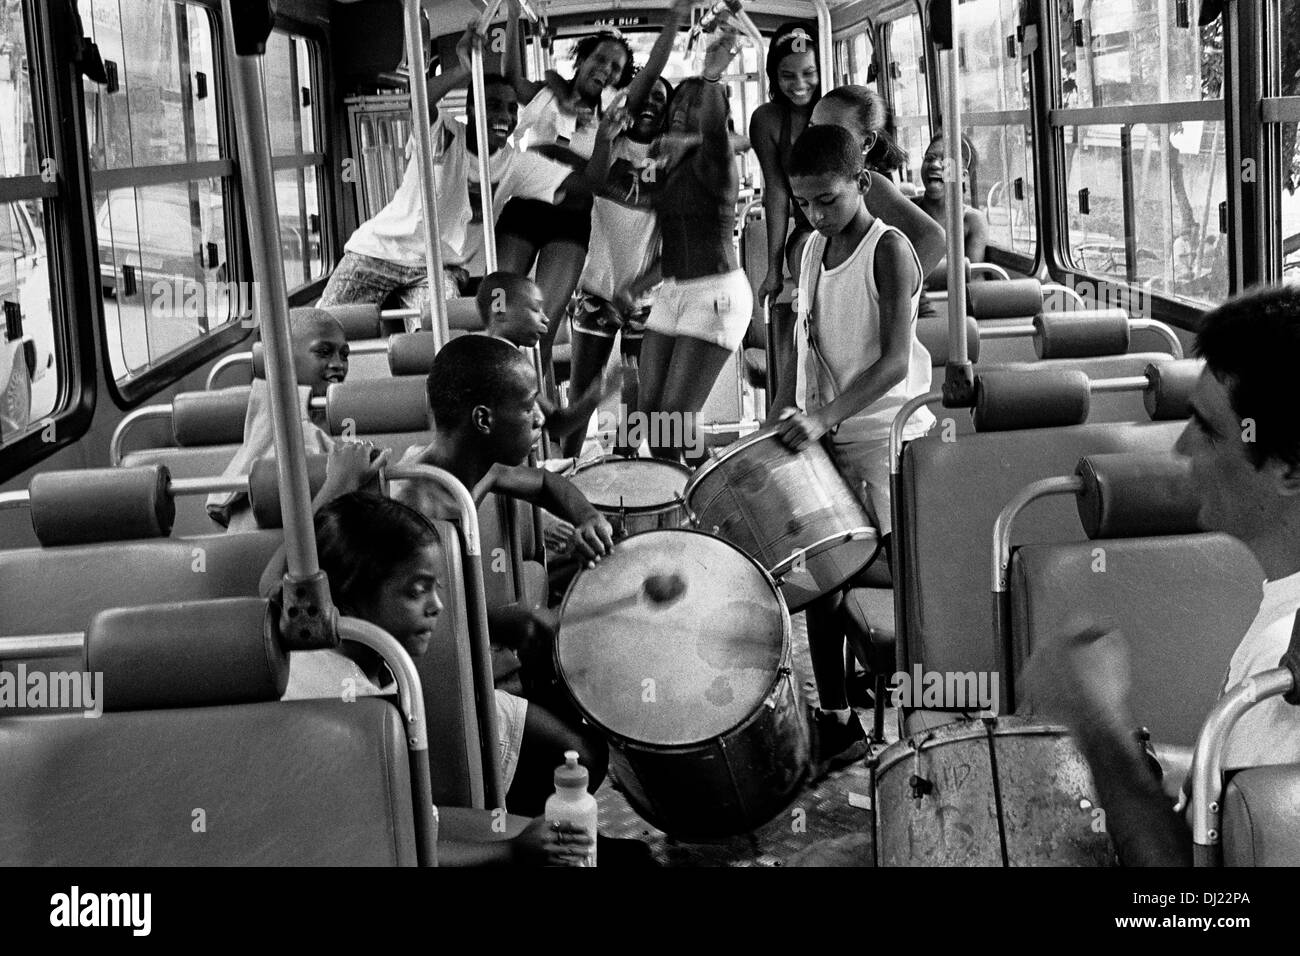 Les jeunes gens brésilien samba danse et jouer de la batterie dans un bus public sur la rue de Rio de Janeiro, Brésil. Banque D'Images